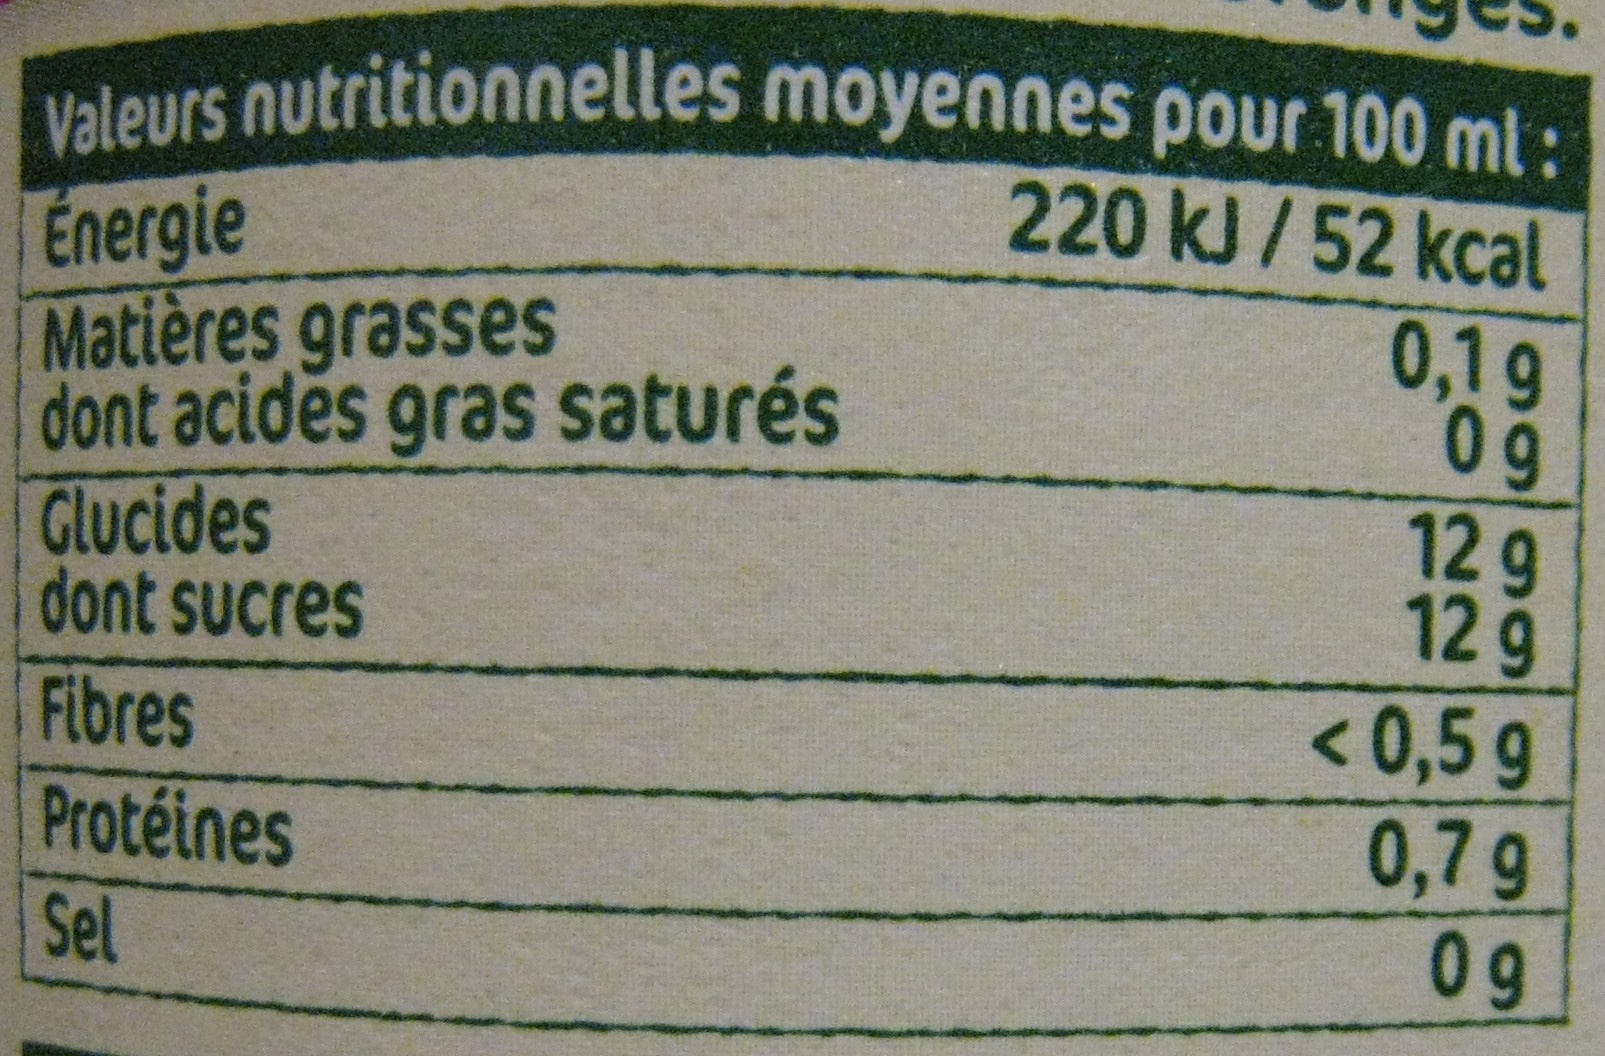 100% pur jus pasteurisé d'Oranges pressées Andros - Nutrition facts - fr